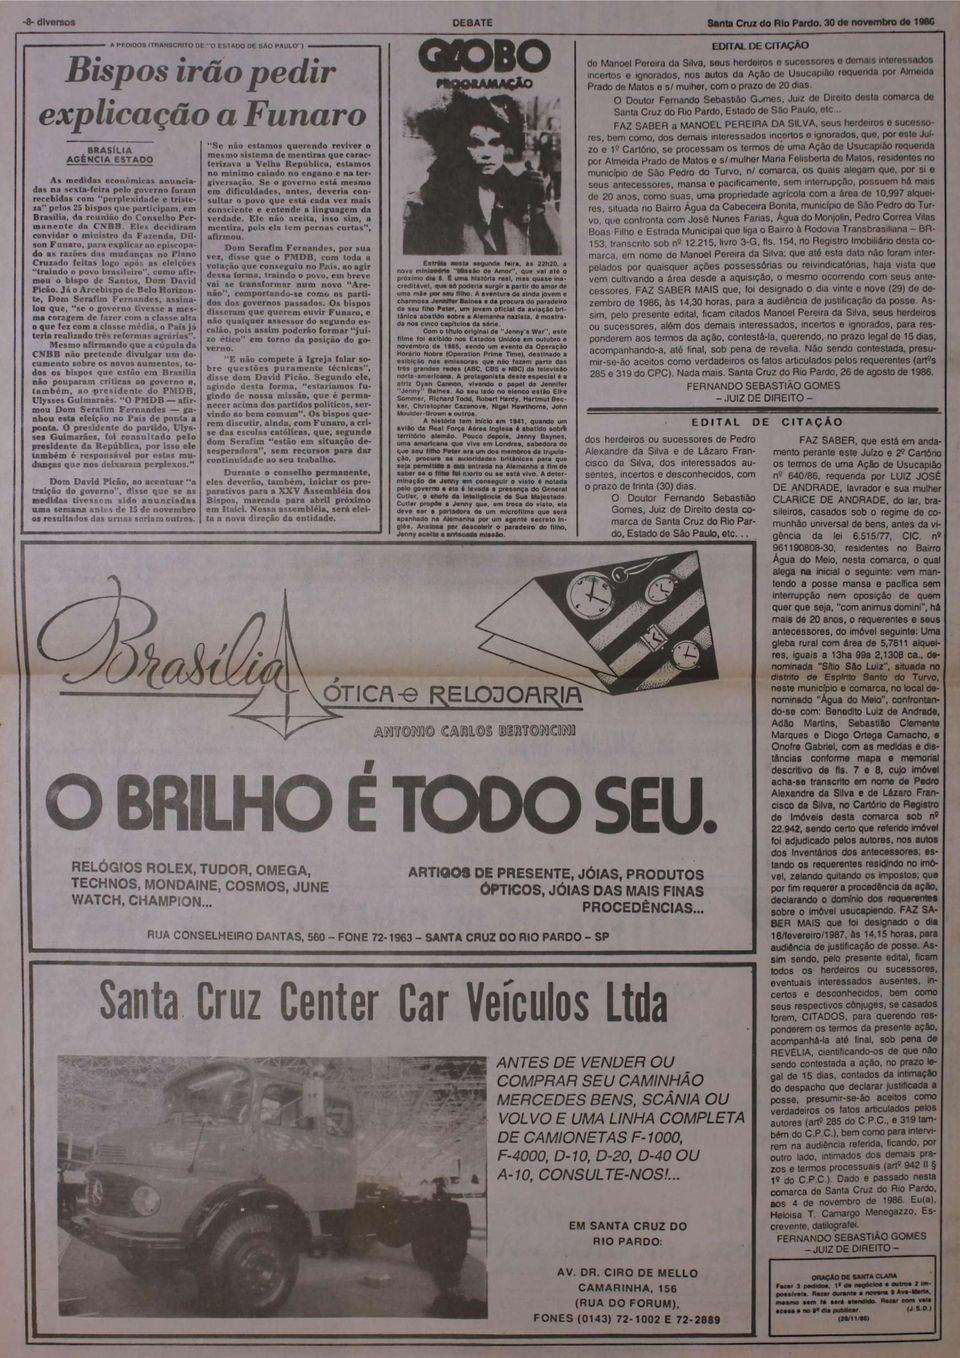 foram recebidas com perplexidade e tristeza" pelos 25 bispos que participam, em Brasília, da reunião do Conselho Perm an en te da CNBB.